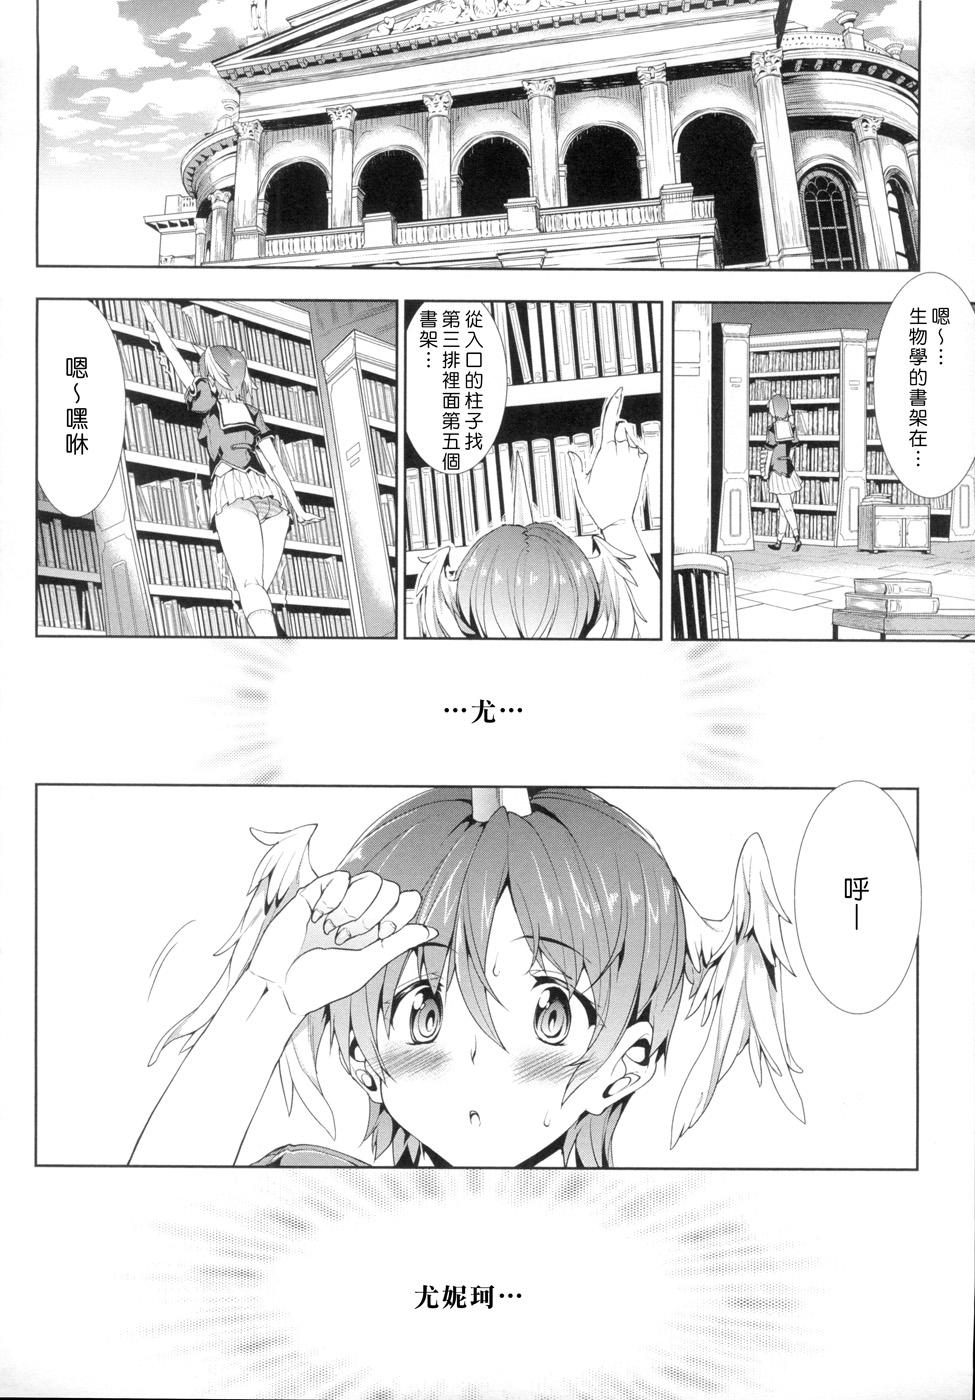 Girlfriends [Erect Sawaru] Shinkyoku no Grimoire -PANDRA saga 2nd story- Ch. 1-4 [Chinese] Bubble - Page 3